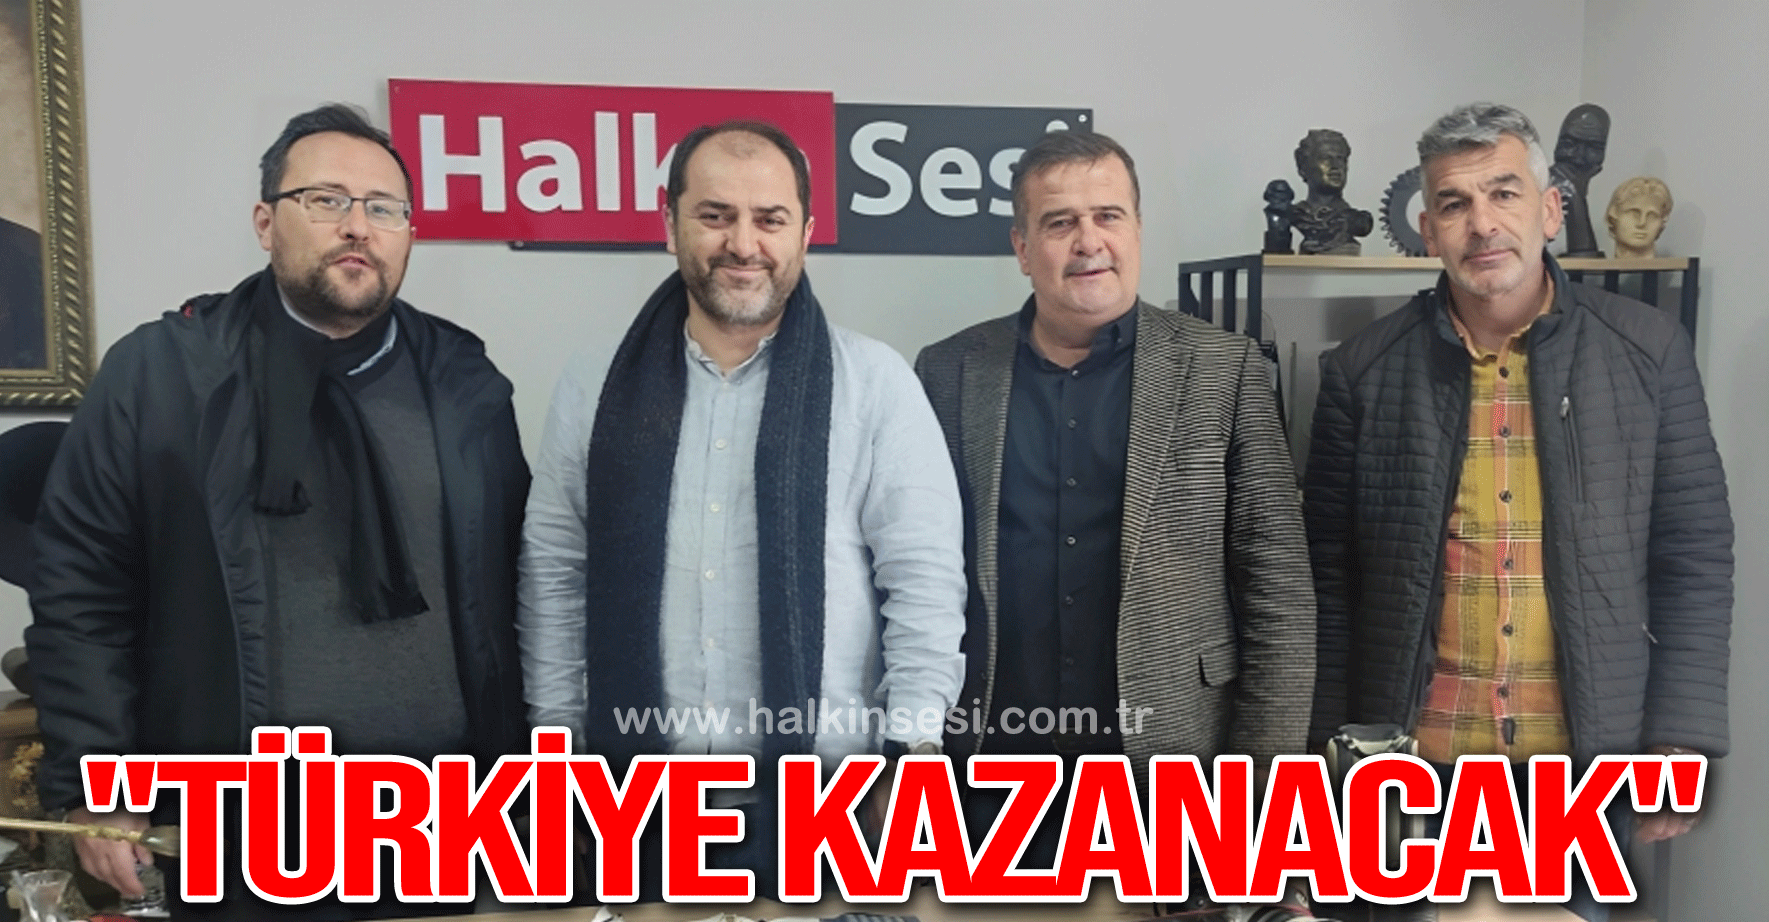  "TÜRKİYE KAZANACAK"